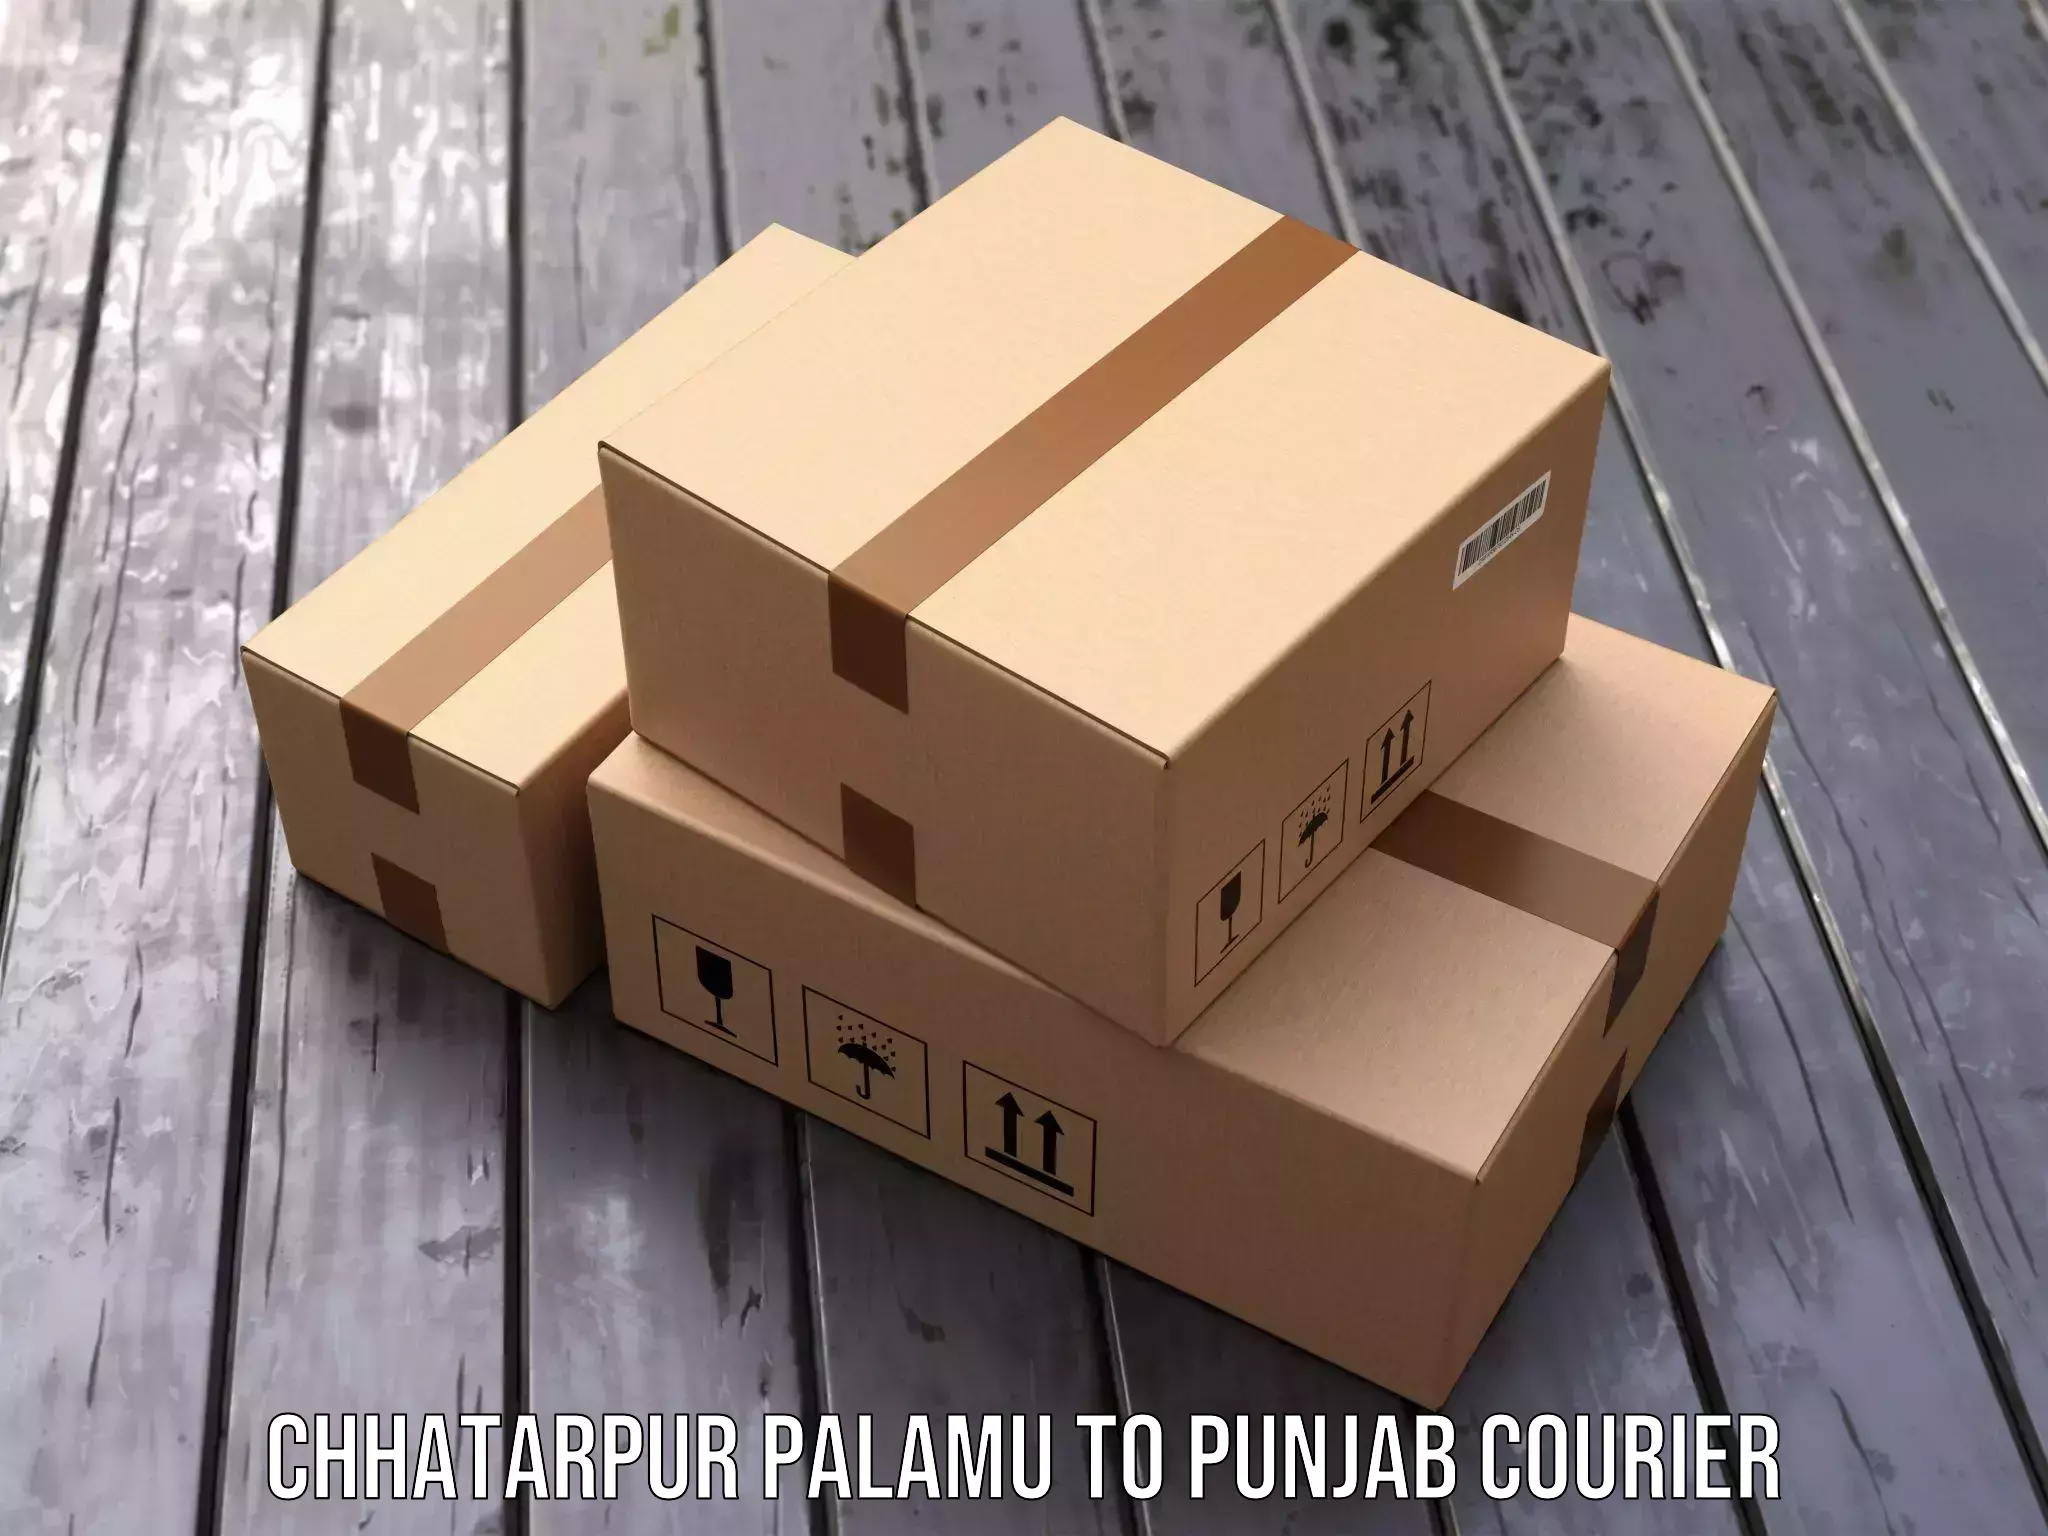 Flexible parcel services Chhatarpur Palamu to IIT Ropar